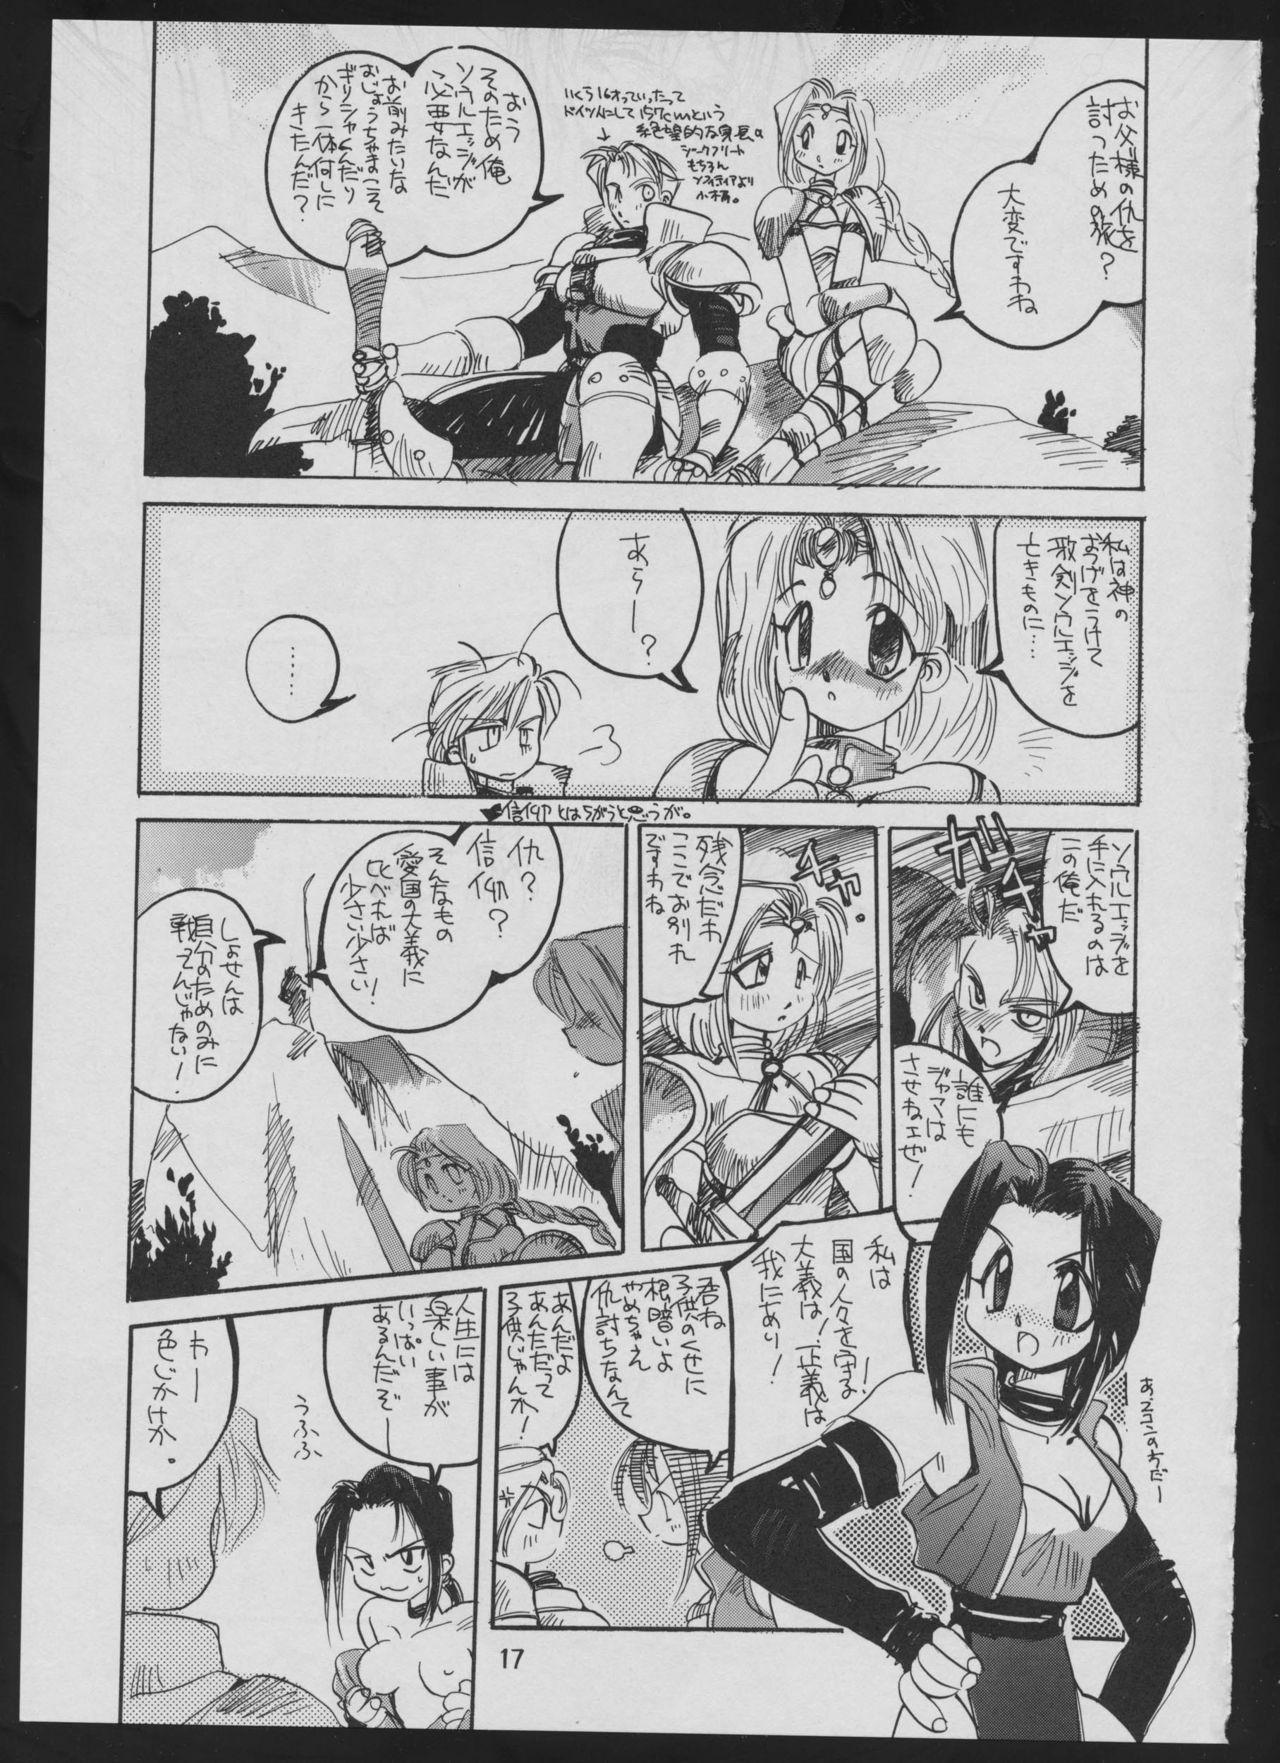 '96 Natsu no Game 18-kin Special 16